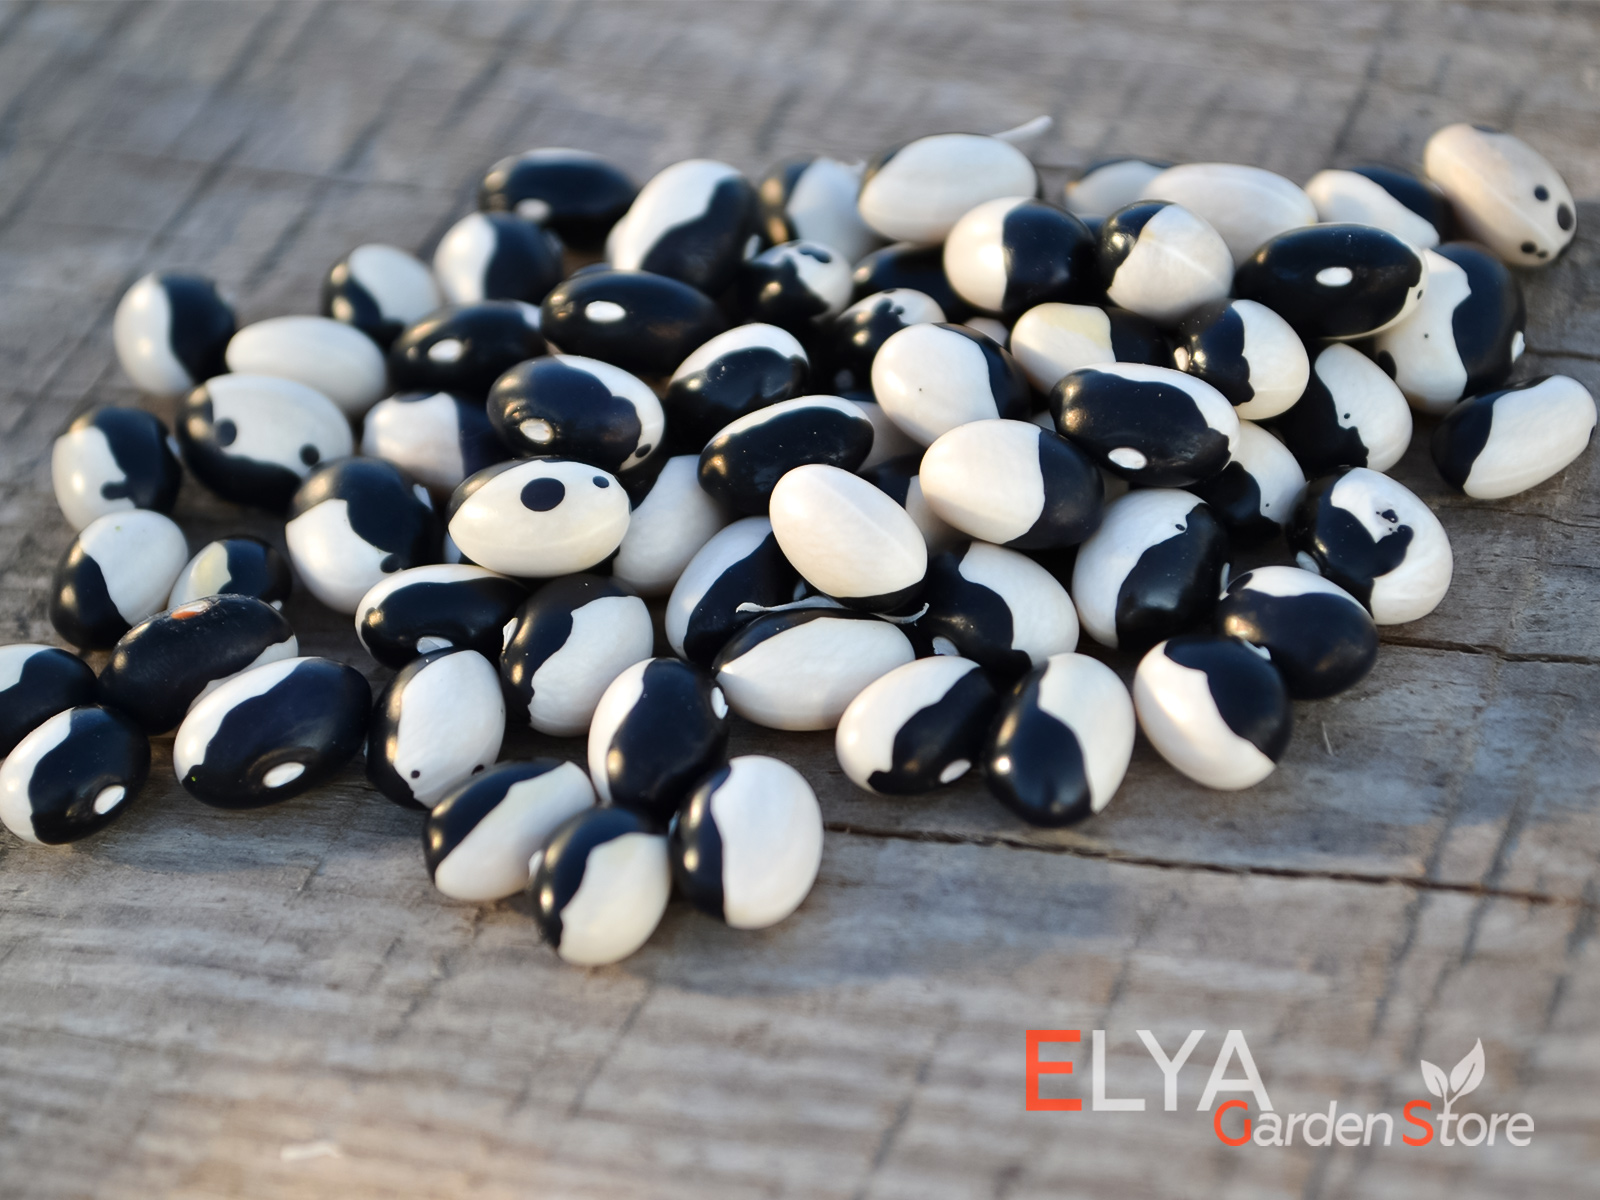 Orca - Косатка - коллекционный сорт фасоли в контрастной черно-белой расцветке - фото магазина семян Elya Garden